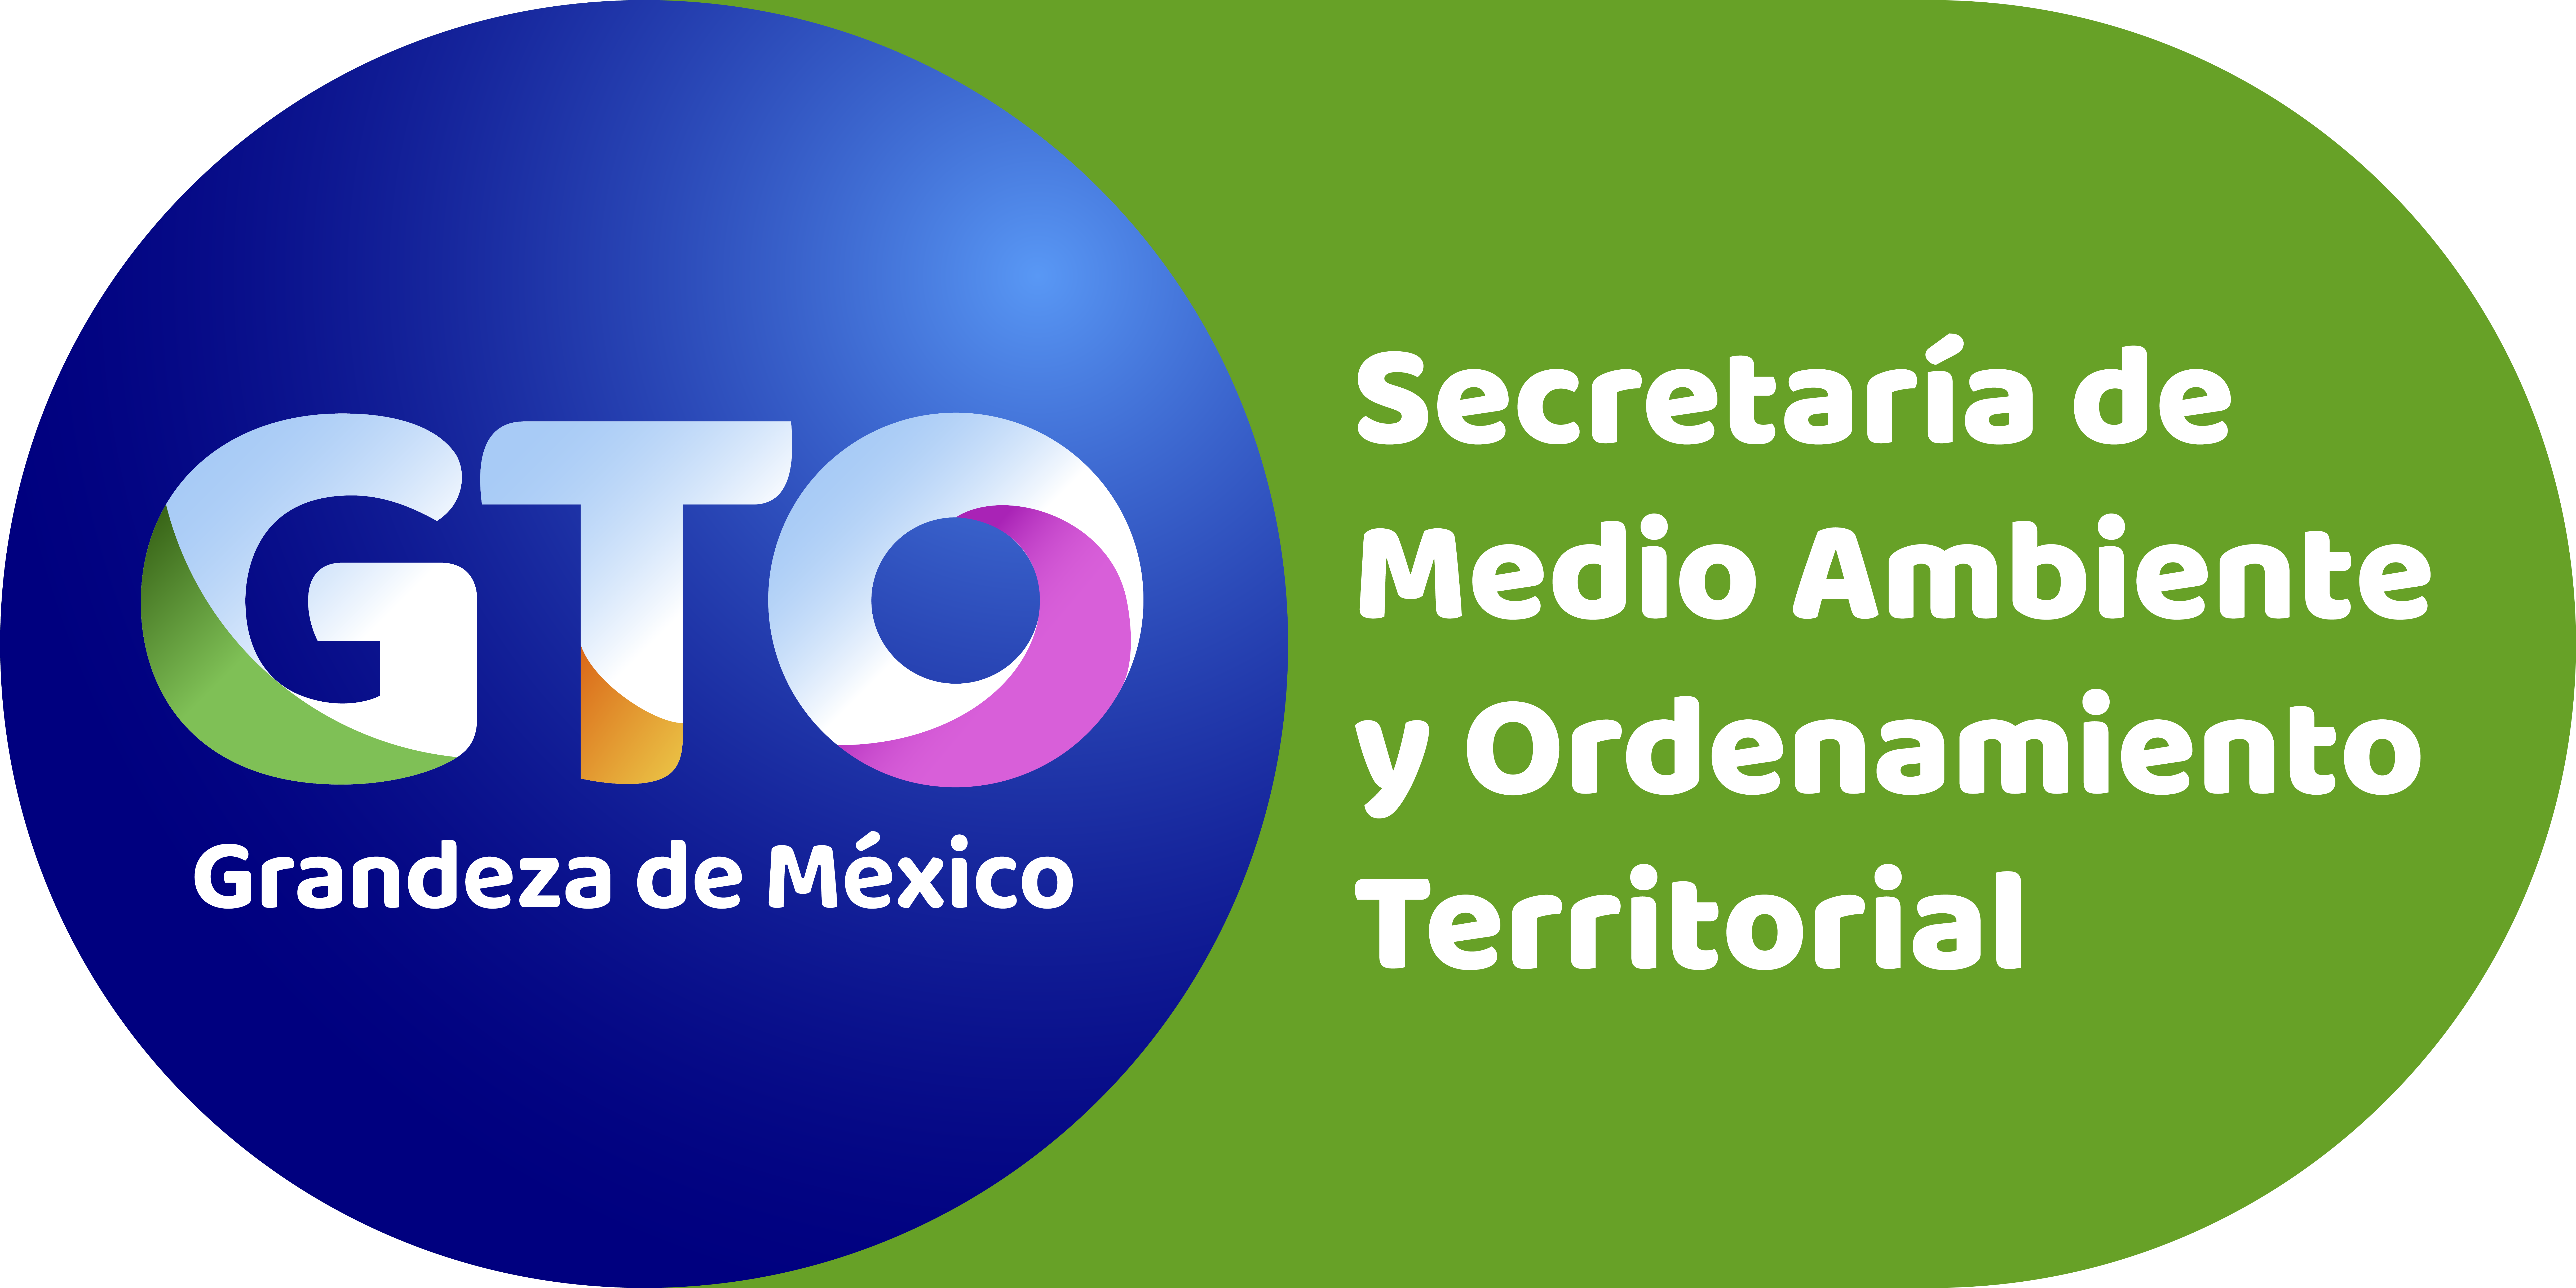 Secretaría de Medio Ambiente y Ordenamiento Territorial, Universidad de Guanajuato y El Herpetario de la Sierra Gorda